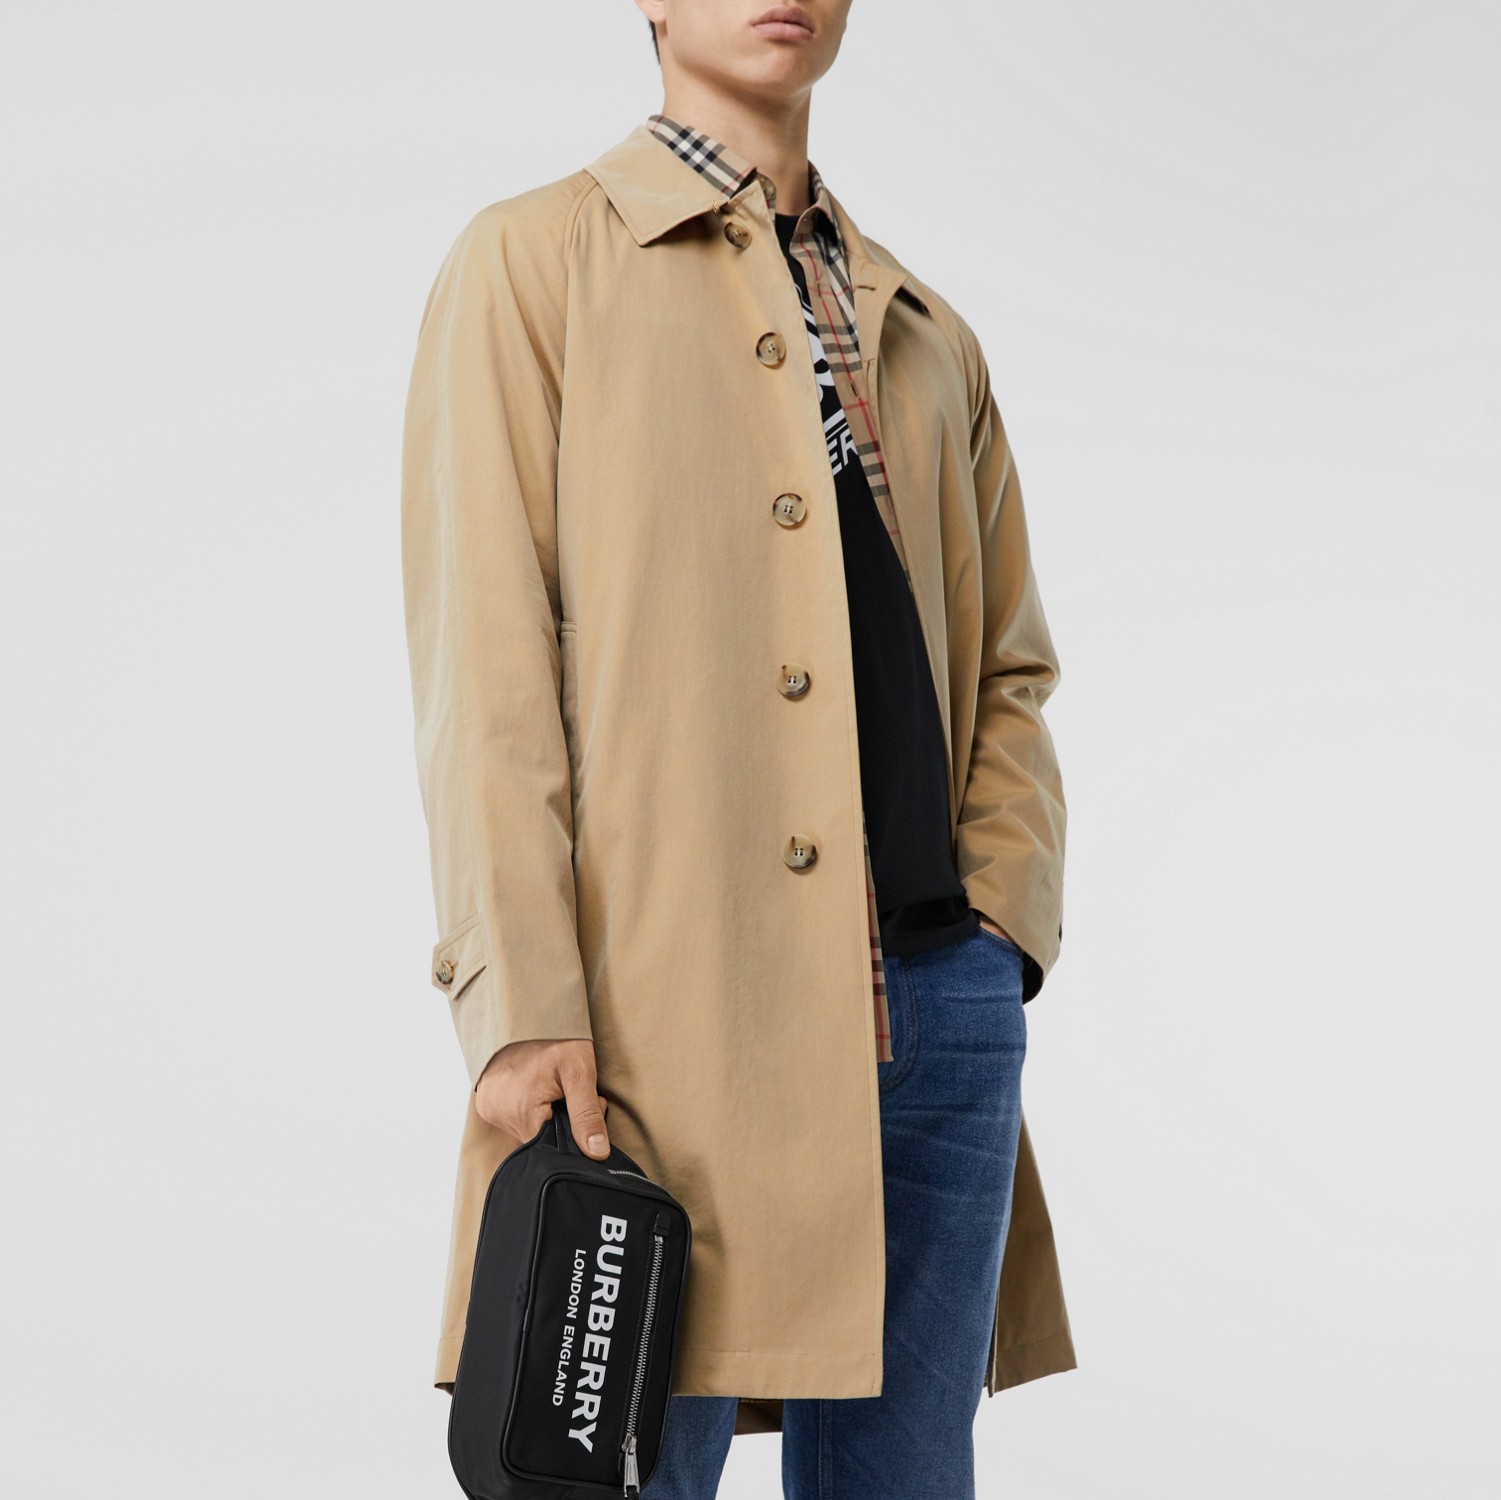 卡姆登版型 – 中长款轻盈轻便大衣